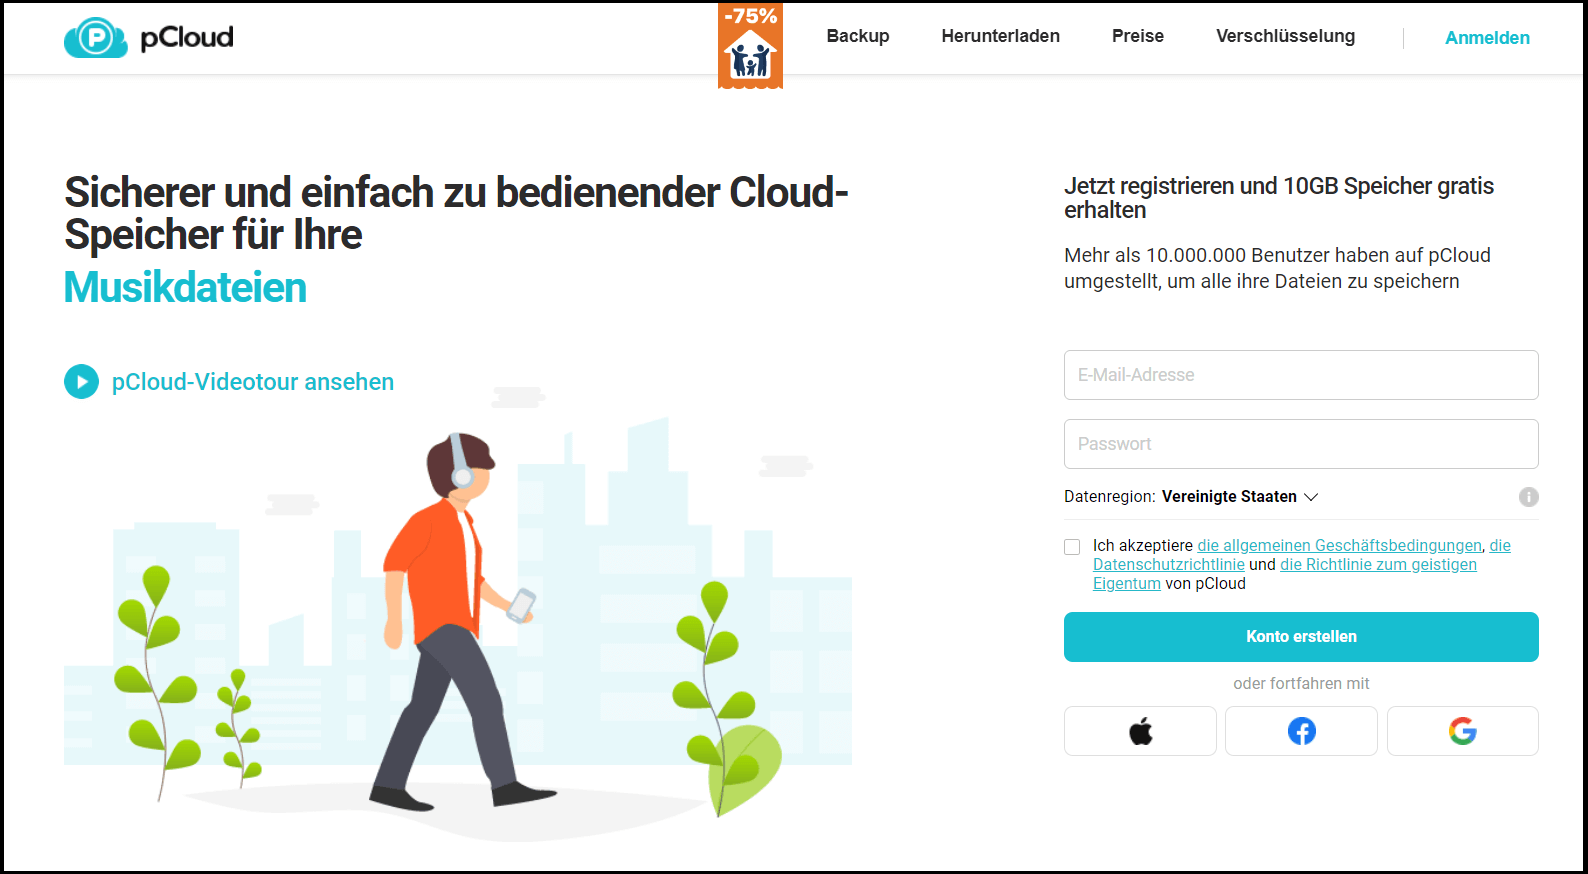 Die Startseite des Cloud-Speicherdienstes pCloud